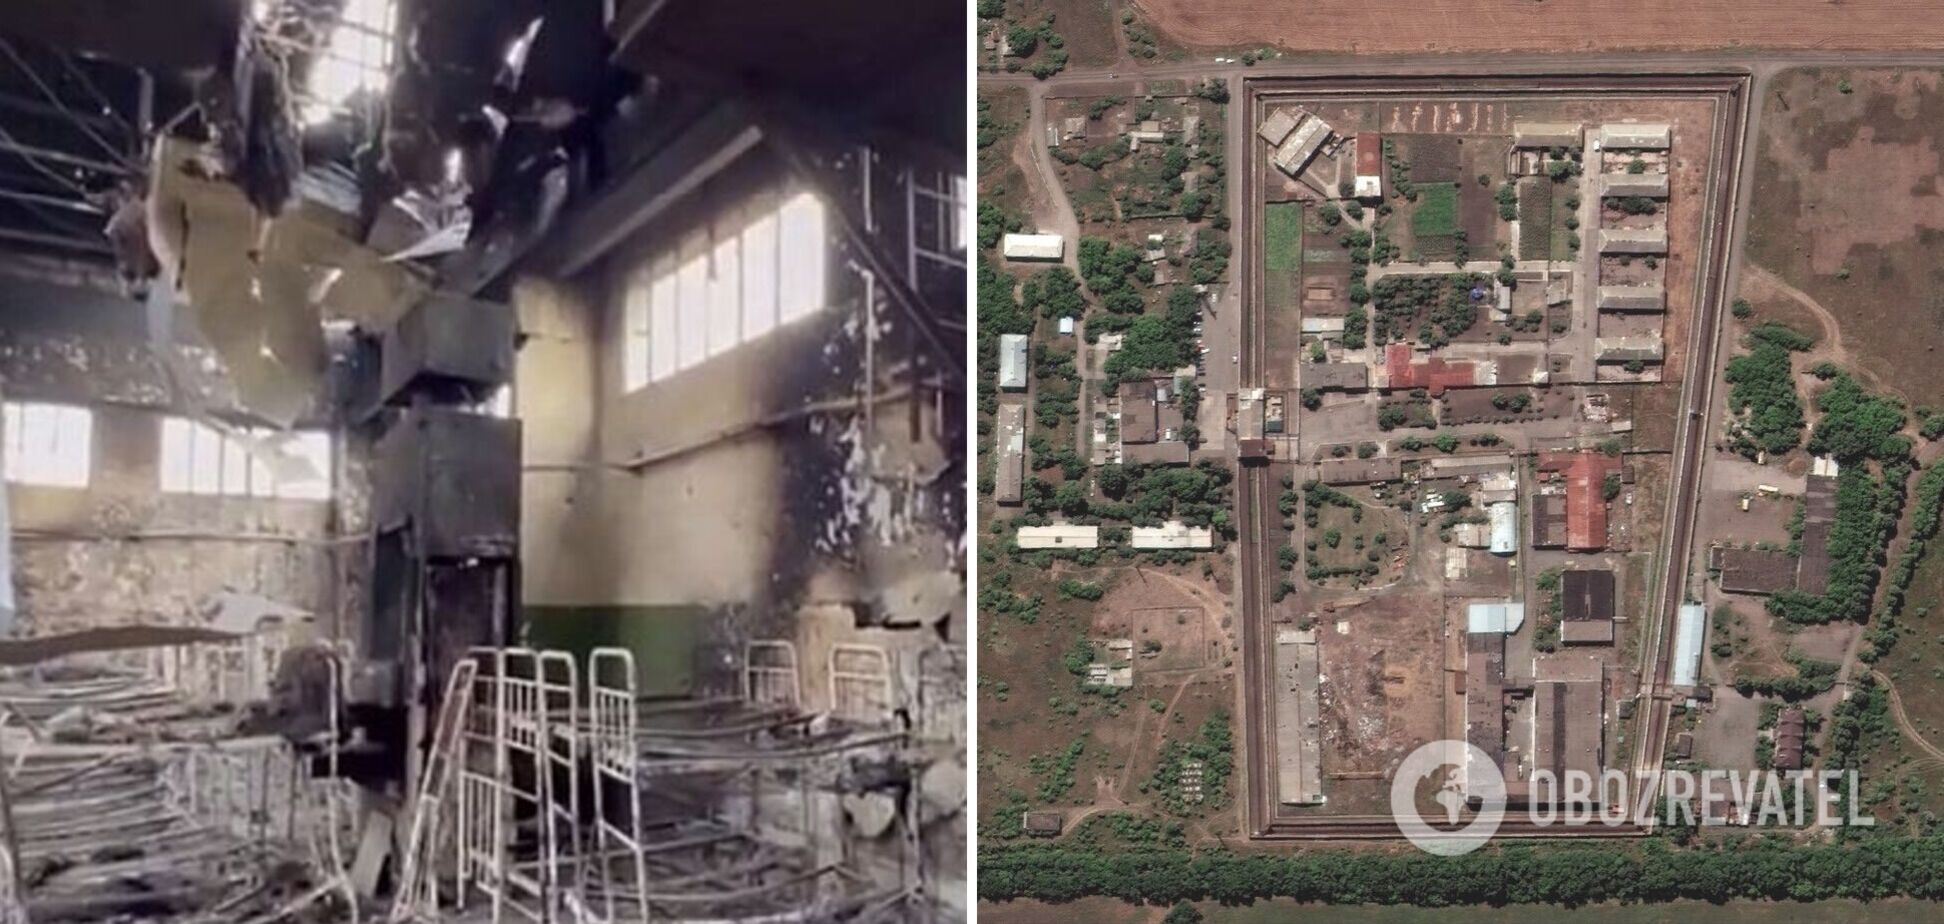 Барак взорвали изнутри: спутниковые снимки пролили свет на новые детали трагедии в Еленовке